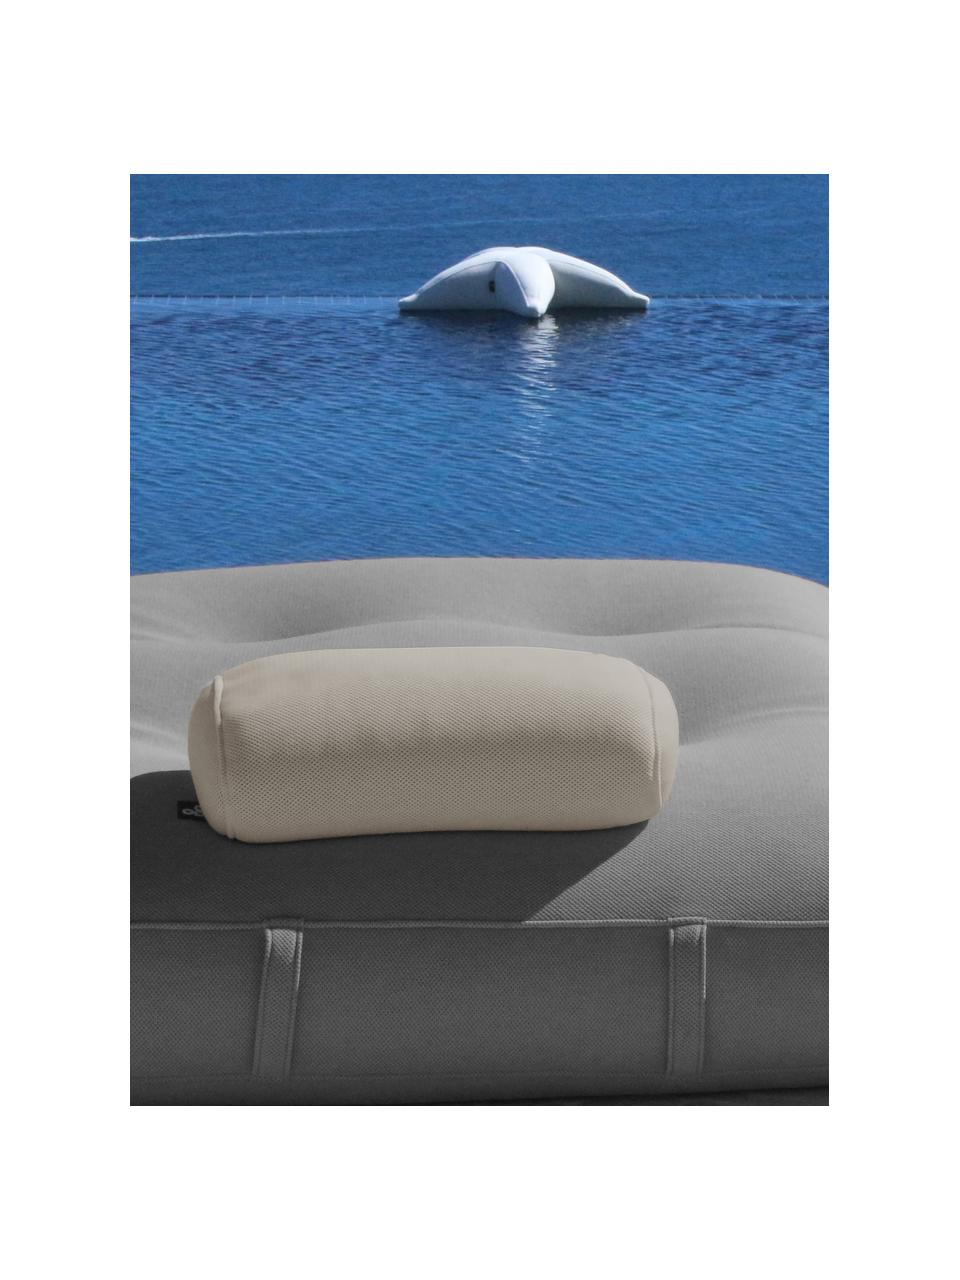 Handgefertigtes Outdoor-Kissen Pillow, Bezug: 70 % PAN + 30 % PES, wass, Hellbeige, B 50 x L 30 cm